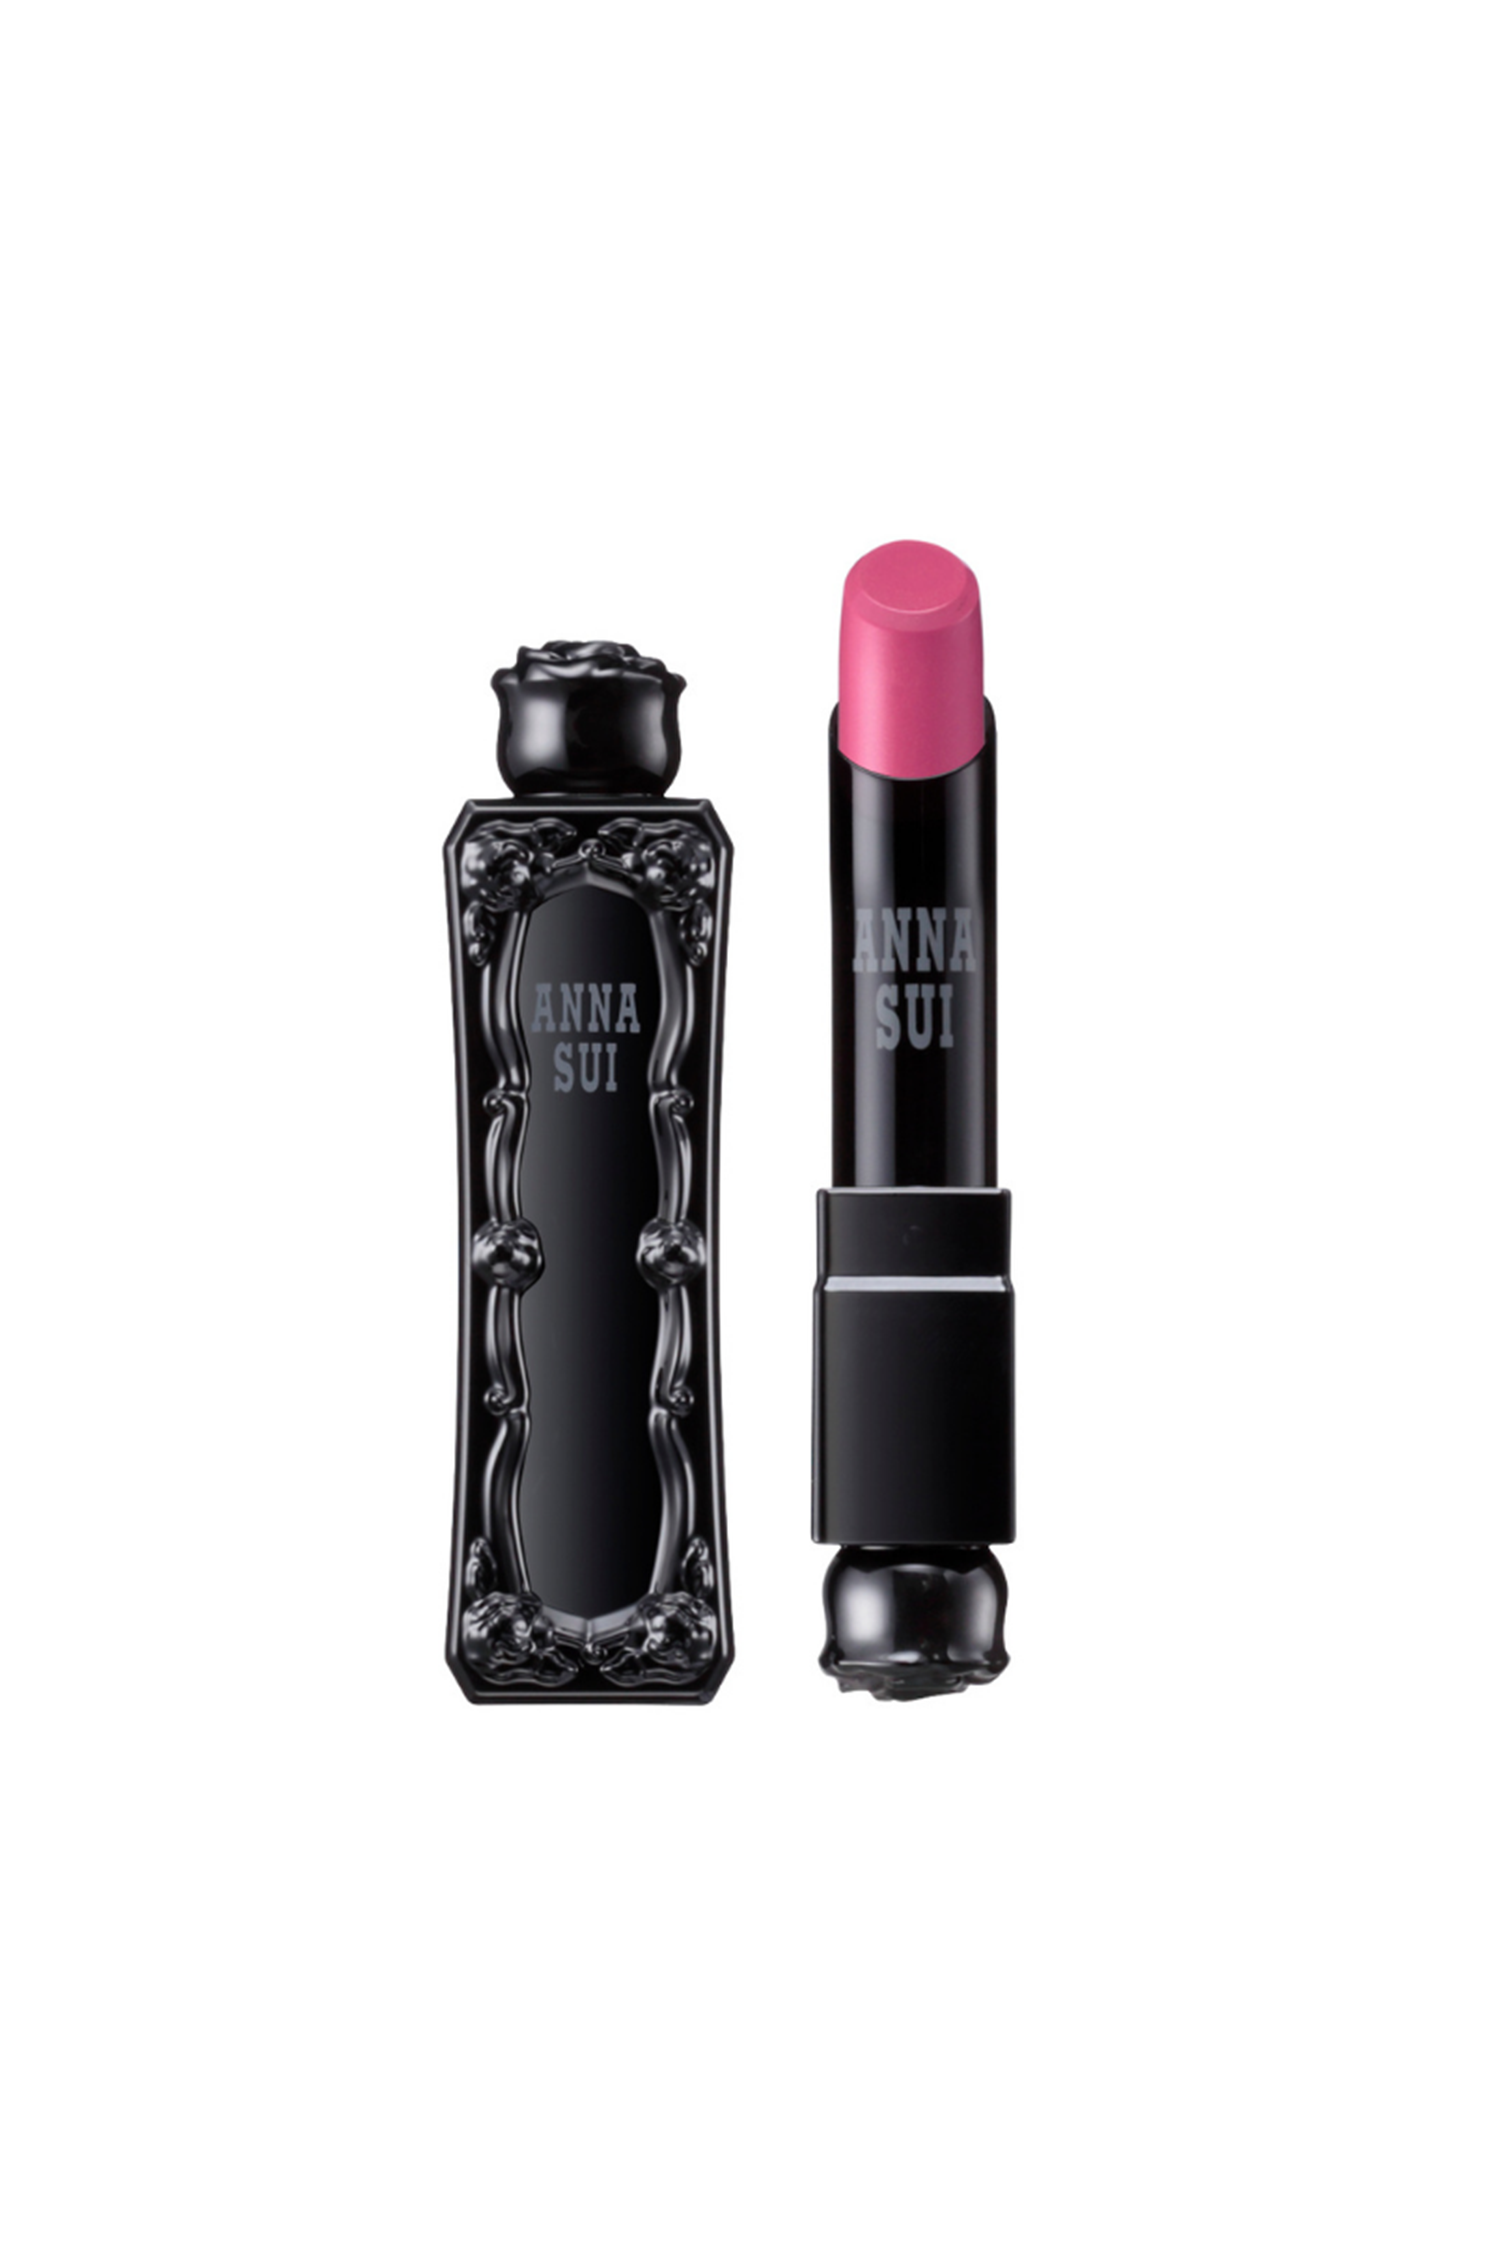 Rouge à lèvres Pretty Pink, dans un flacon Anna Sui, noir avec un motif de rose en relief, rose sur le dessus 